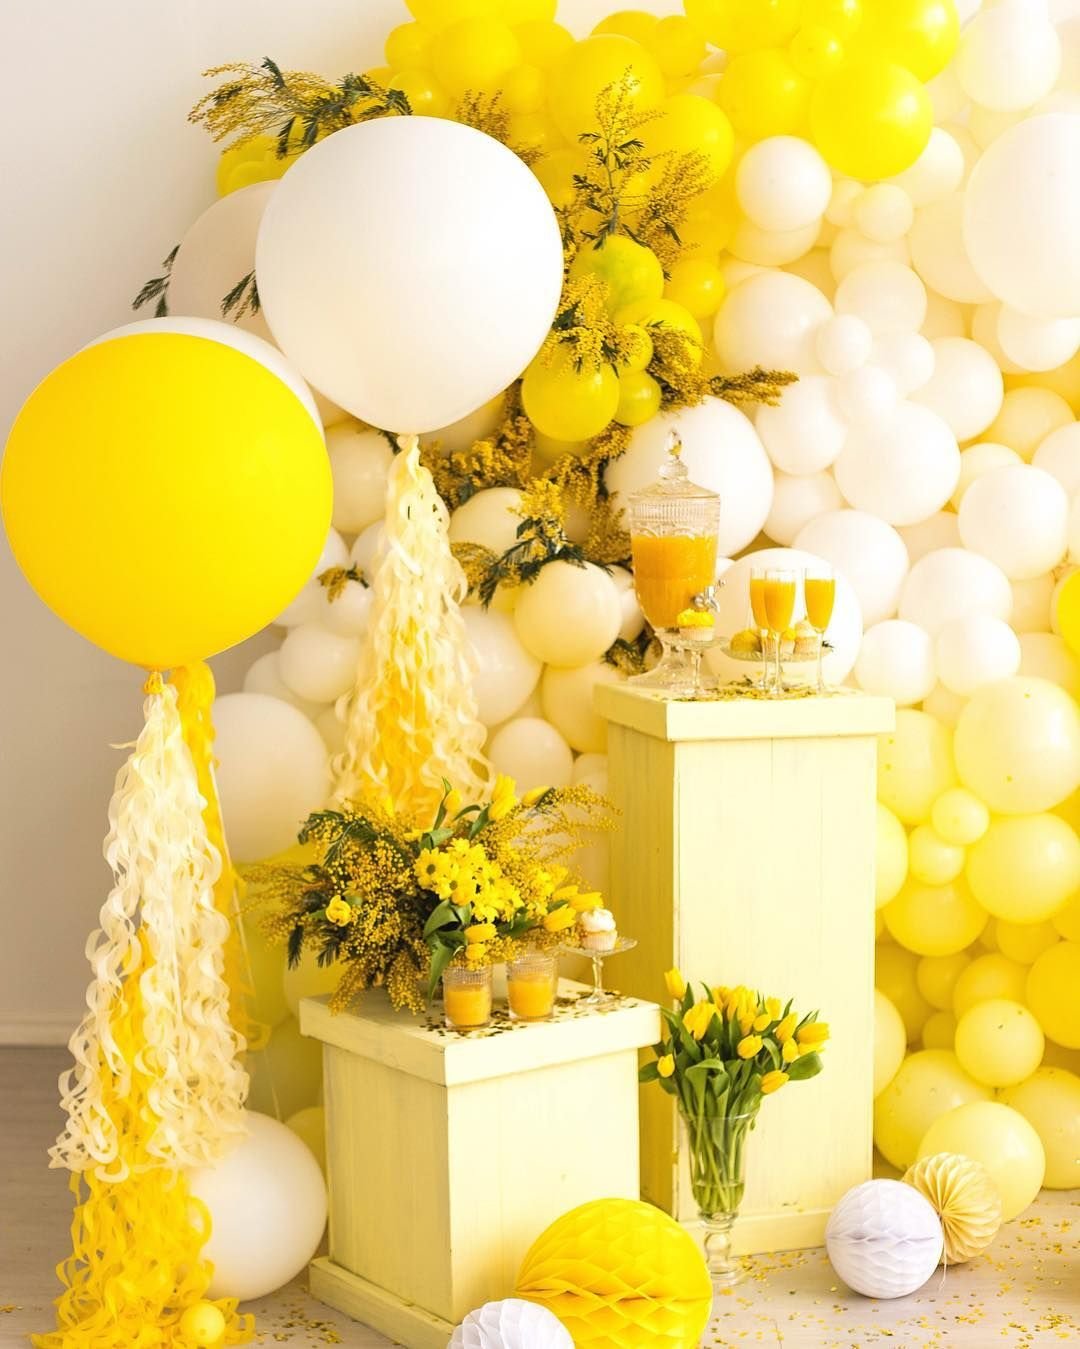 Желто розовые шары. Желтые воздушные шары. Бело желтые воздушные шары. Фотозона в желтом цвете. Декор для праздника в желтом цвете.